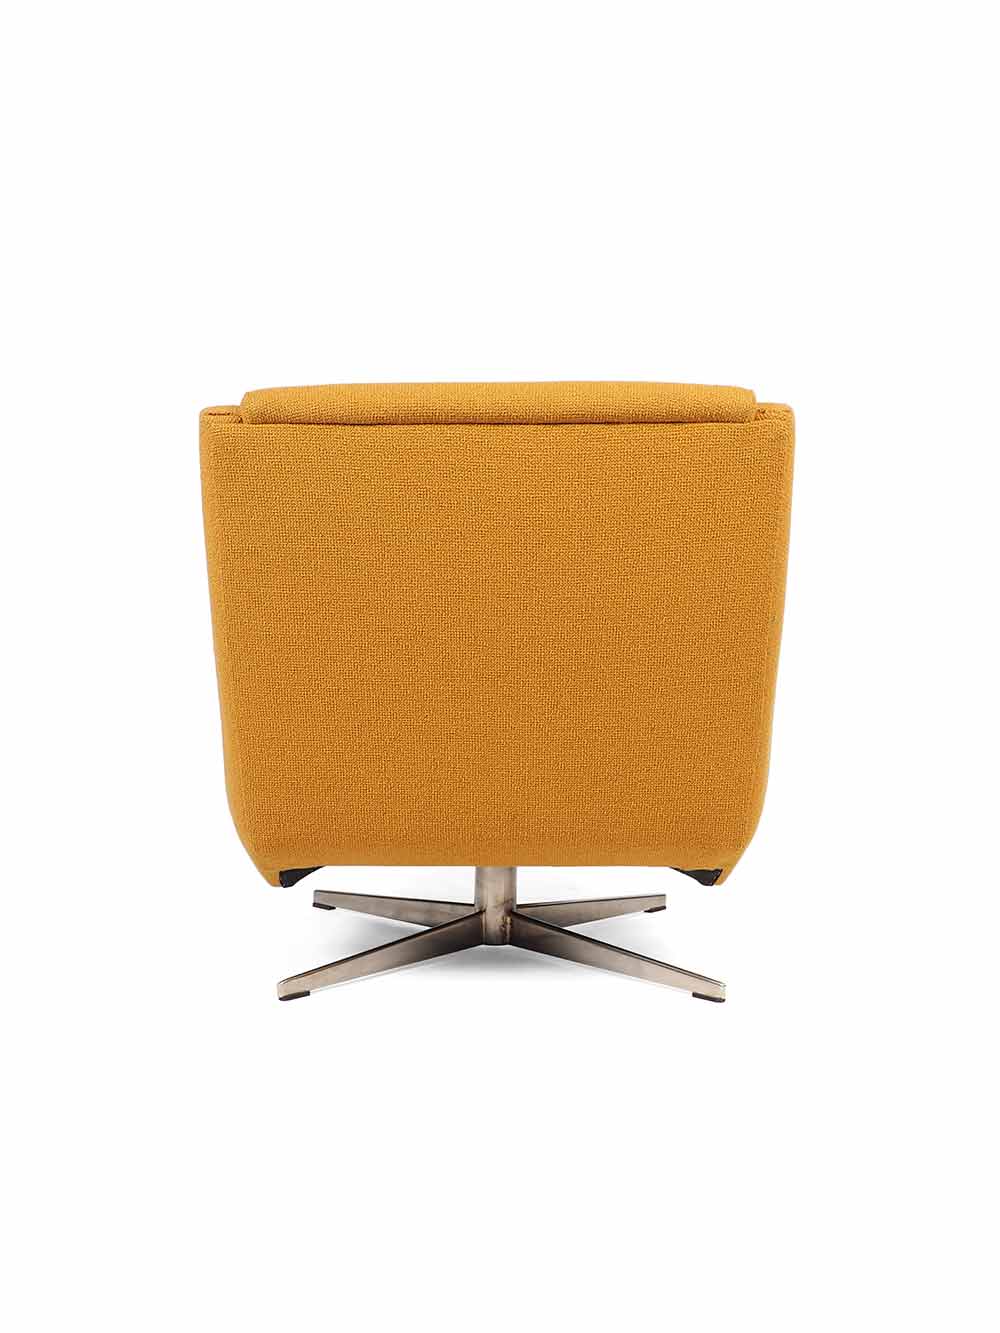 Gele lounge stoel jaren zestig